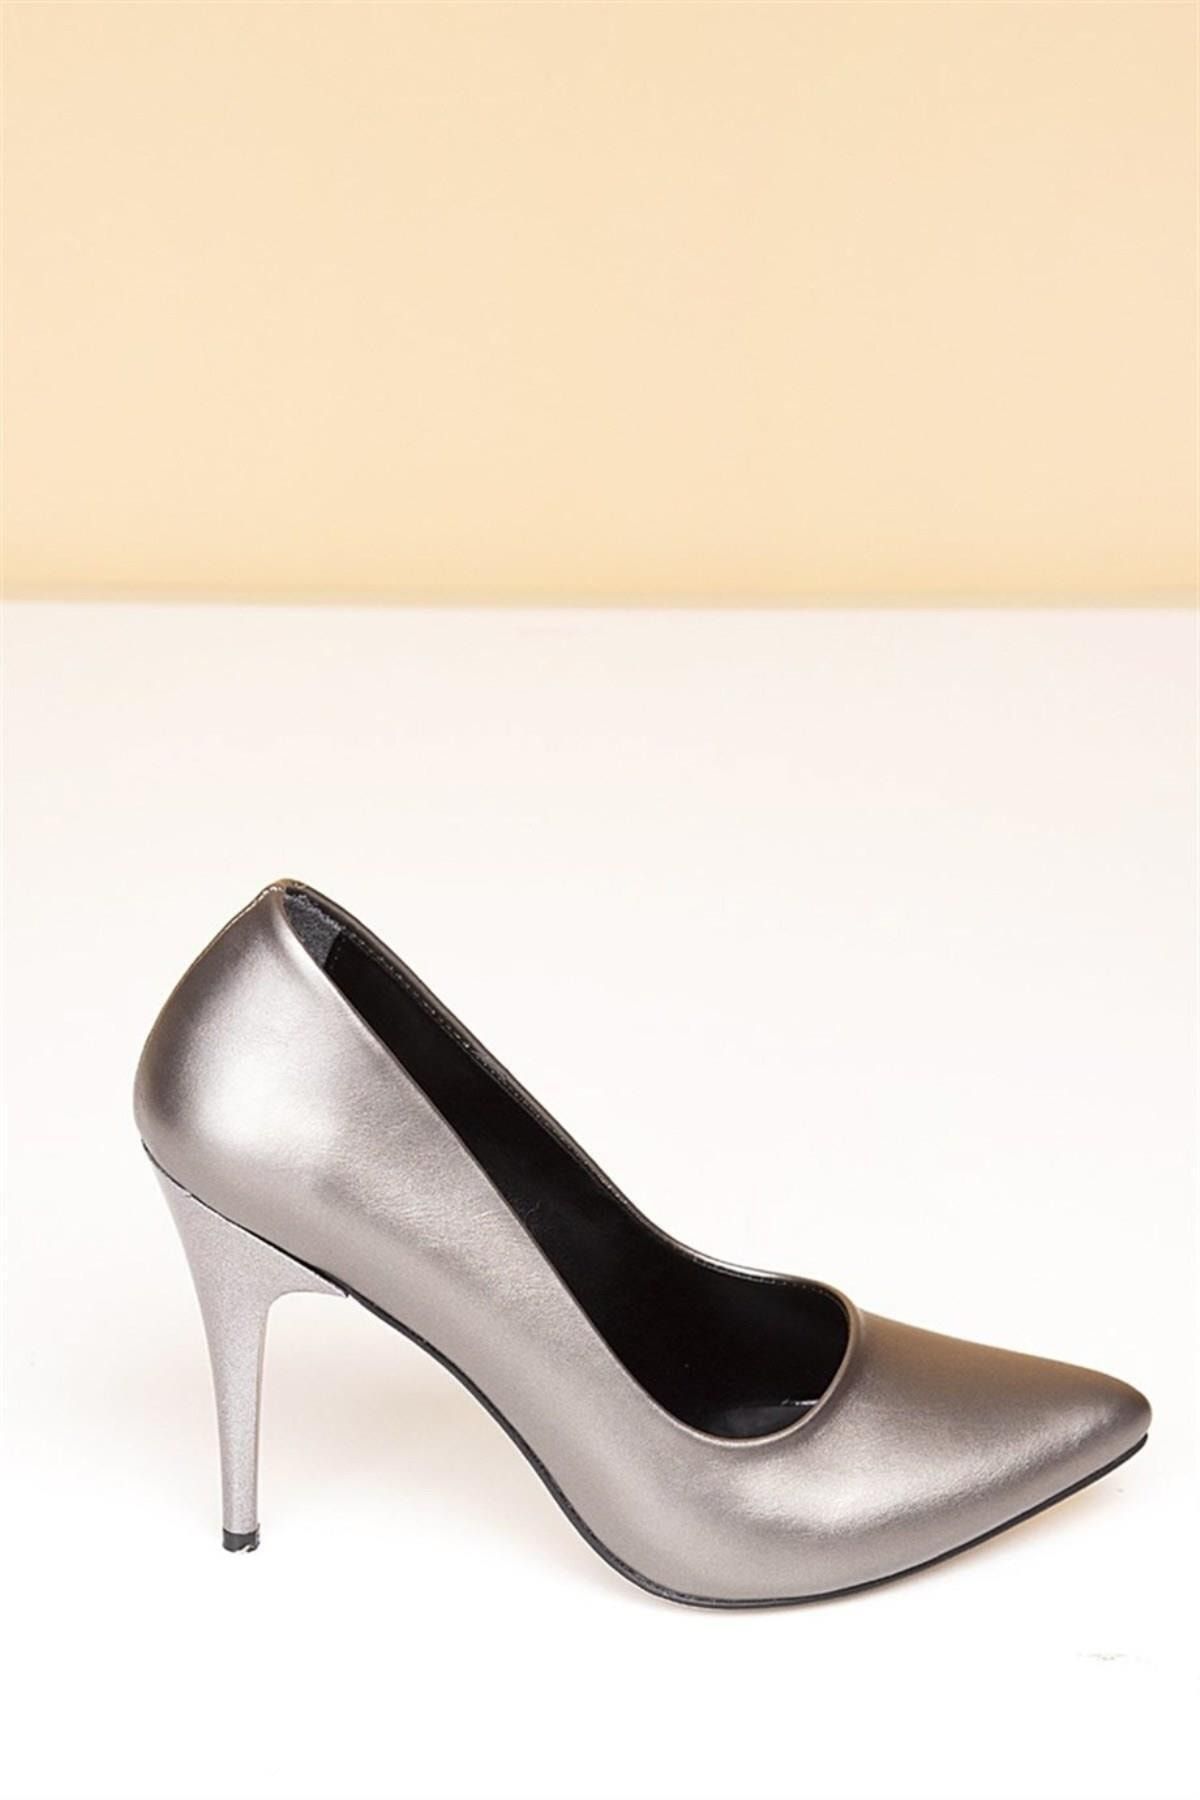 Pierre Cardin Kadın Topuklu Ayakkabı (Pc-50180)